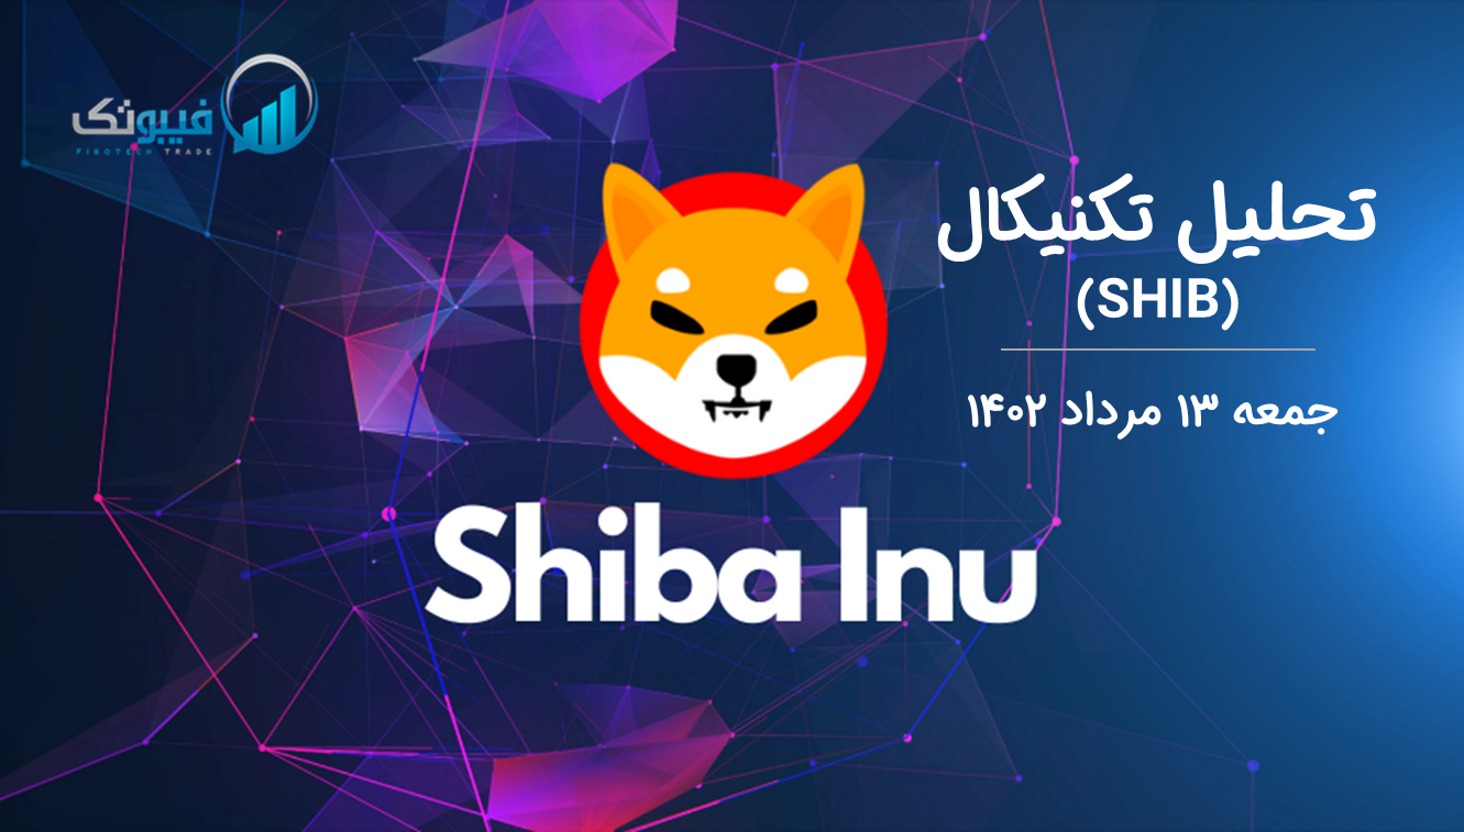 تحلیل تکنیکال شیبااینو (SHIB) - جمعه 13 مرداد 1402